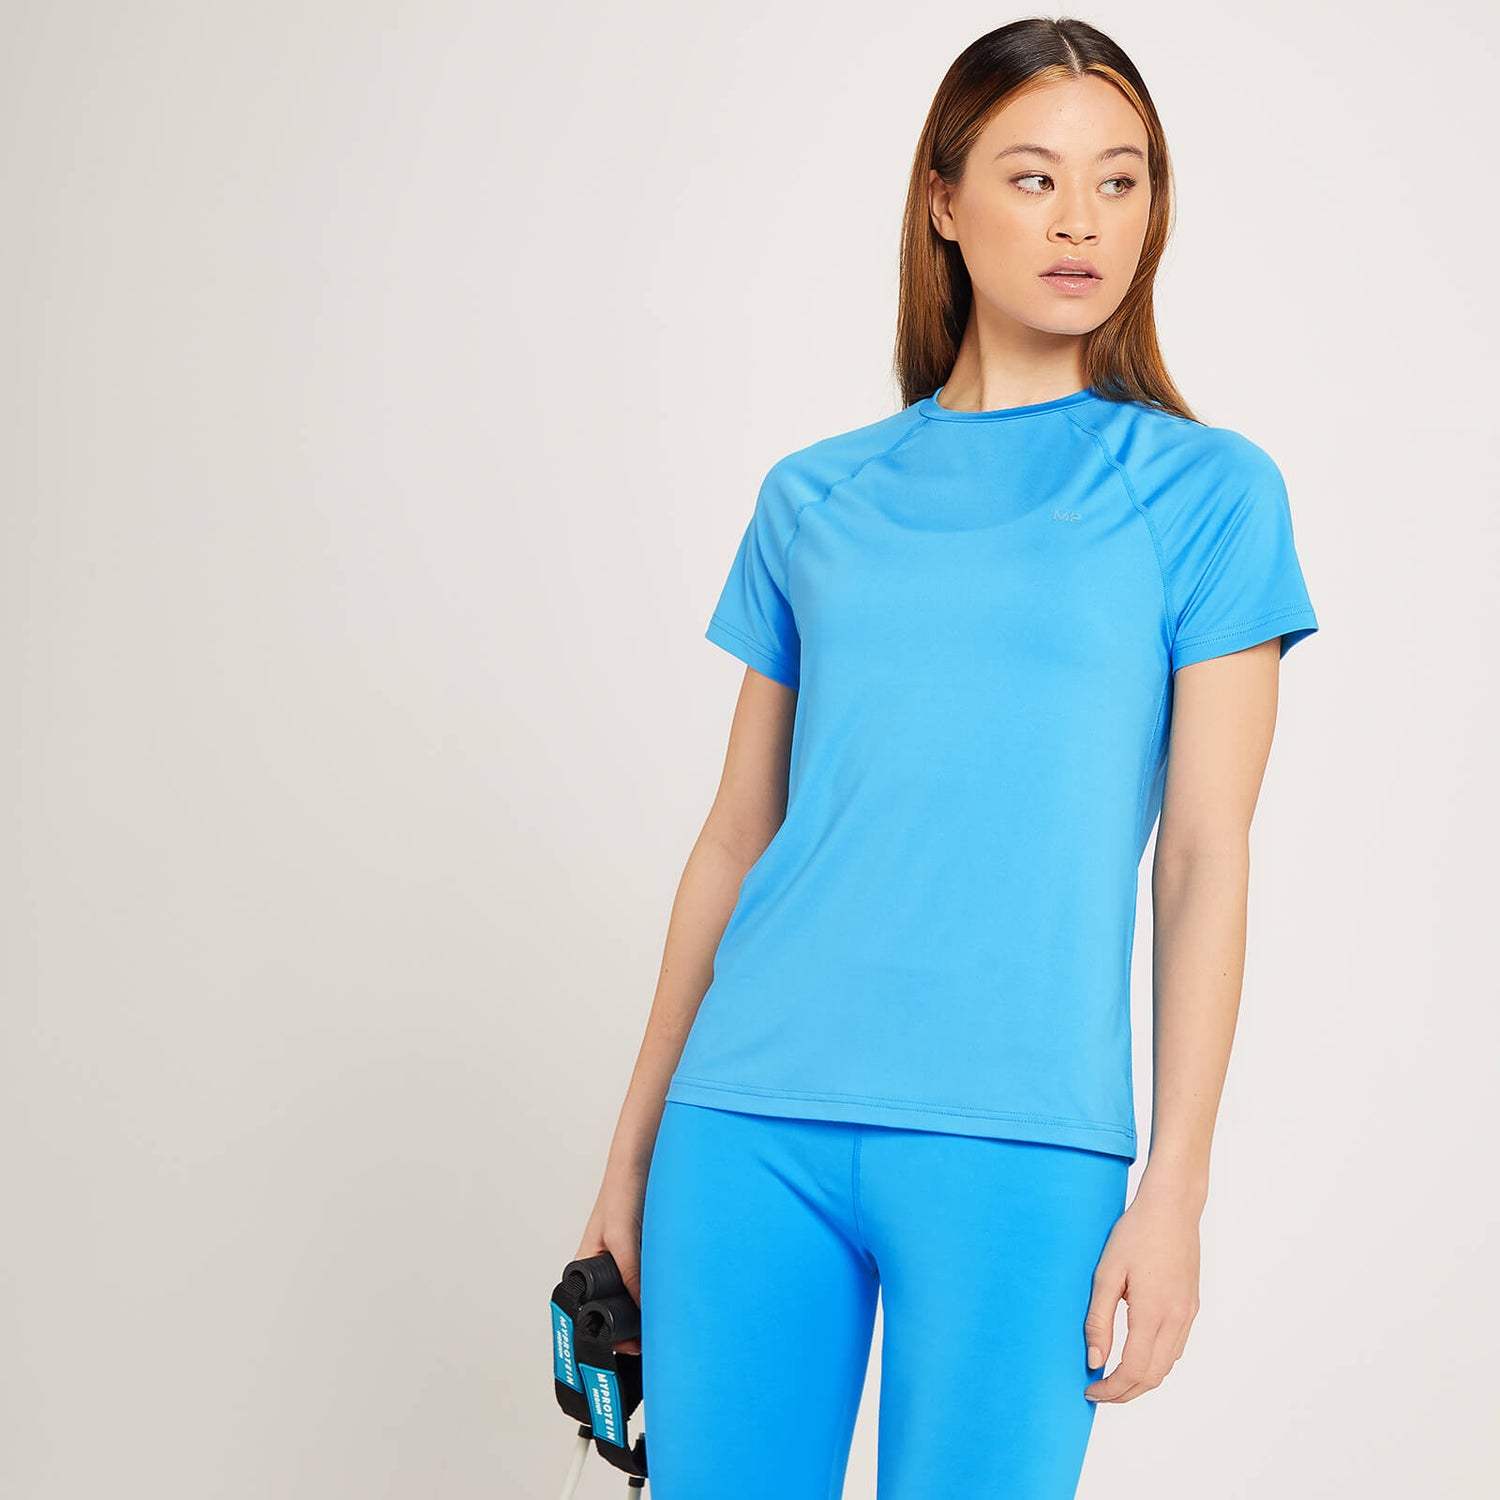 Naisten MP Linear Mark Training -T-paita - Kirkkaan sininen - XS